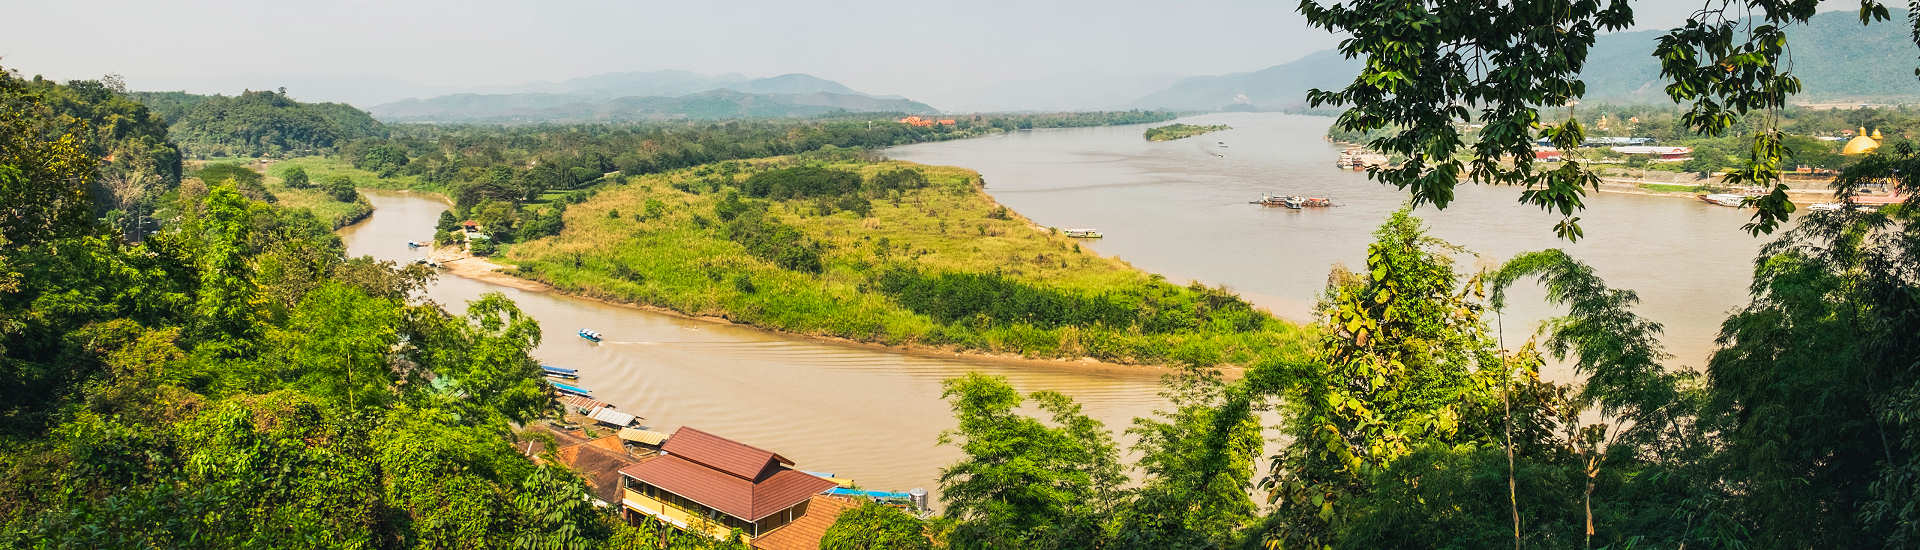 Panoramablick auf das Goldene Dreieck, wo der Mekong-Fluss die Grenze zwischen Thailand, Laos und Myanmar bildet.